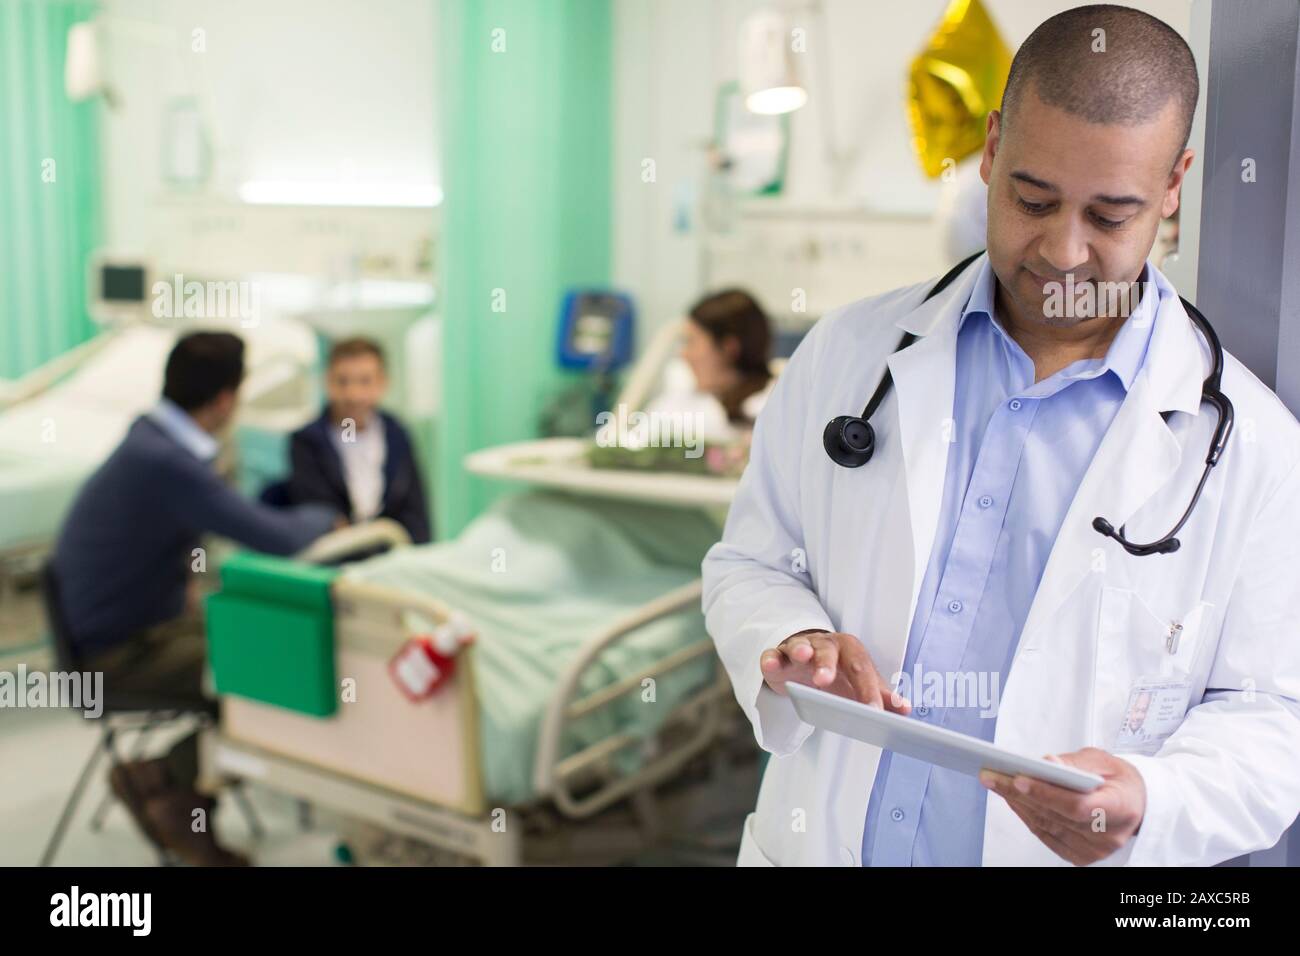 Médecin masculin avec tablette numérique en train de faire des rondes dans le service hospitalier Banque D'Images